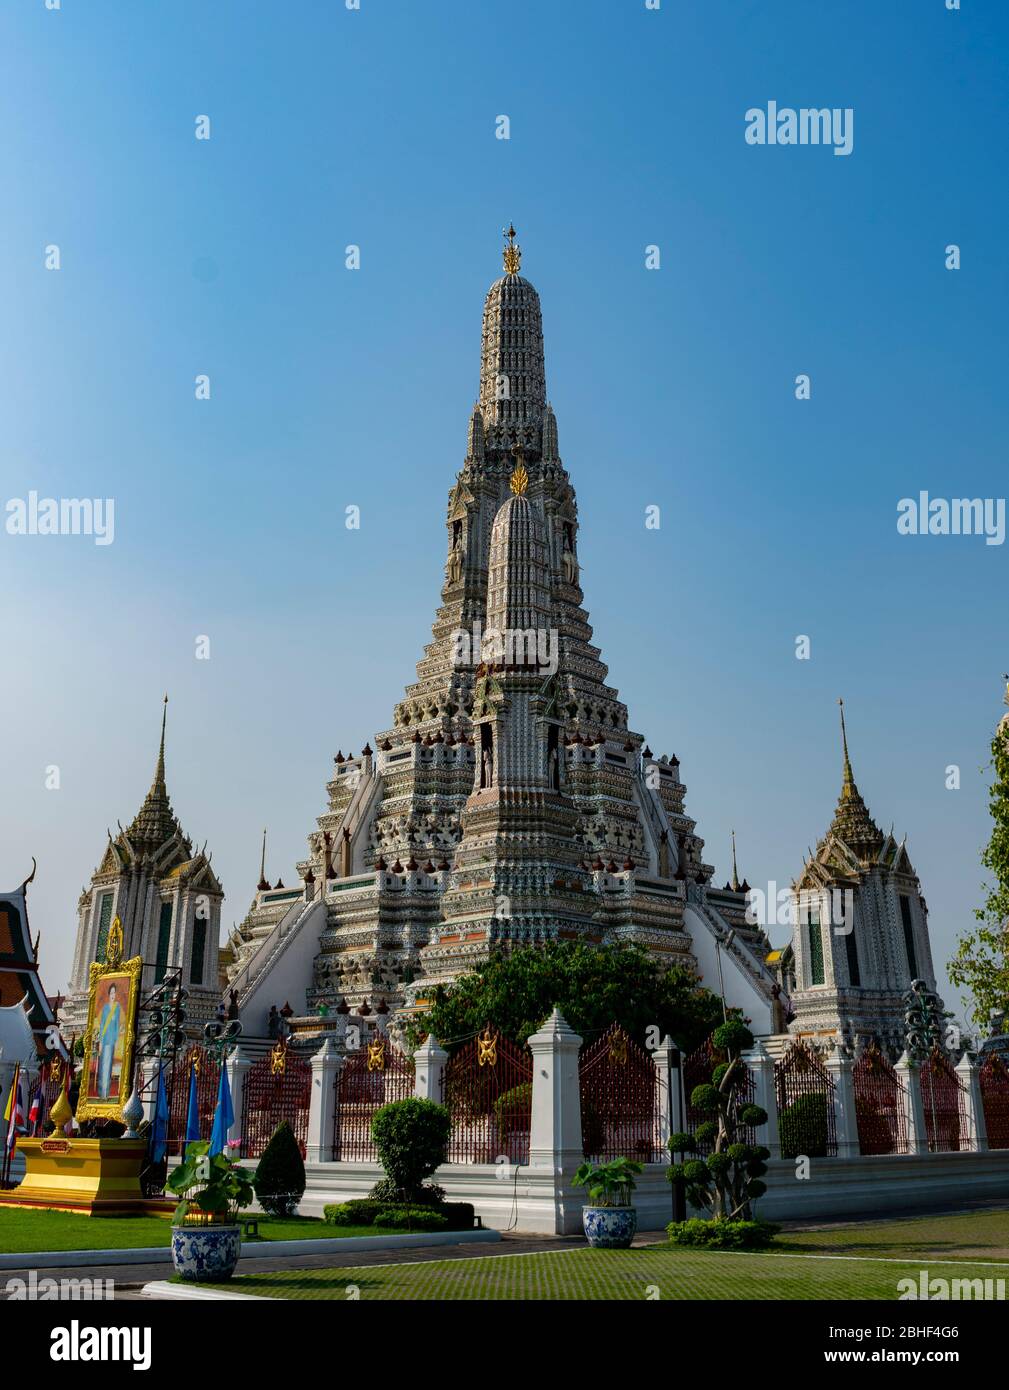 Thailandia, Bangkok - 12. januar 2019 - der Wat Arun in Bangkok Stockfoto